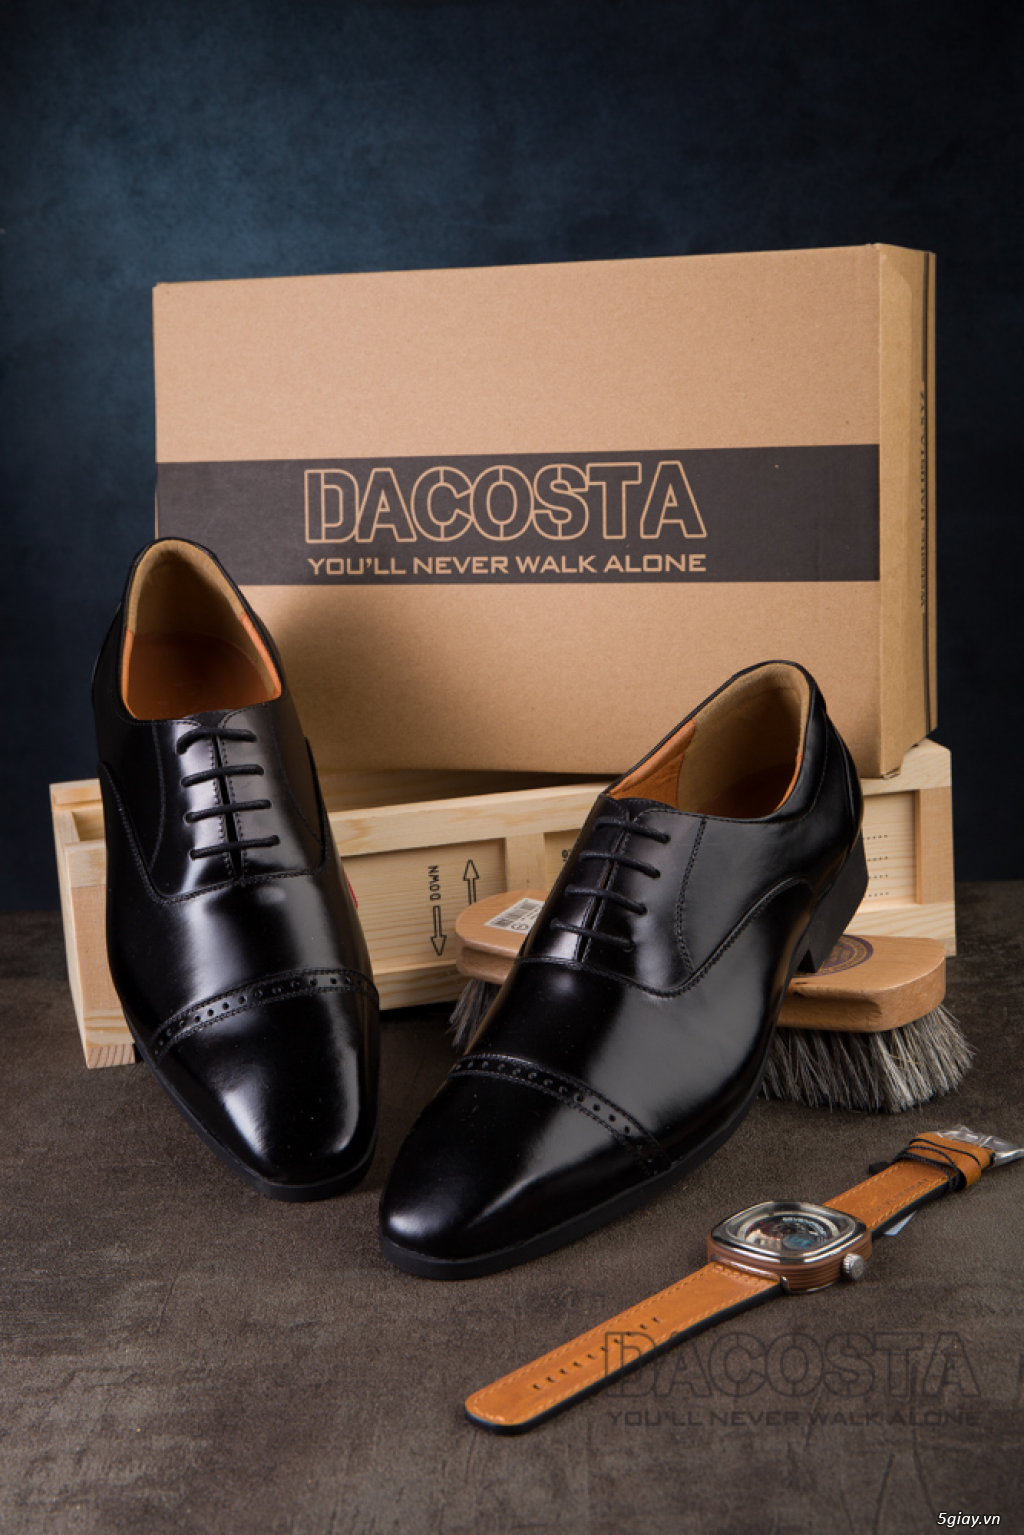 Tiệm Giày Dacosta - Những Mẫu Giày Tây Oxford Hot Nhất 2019 - 34